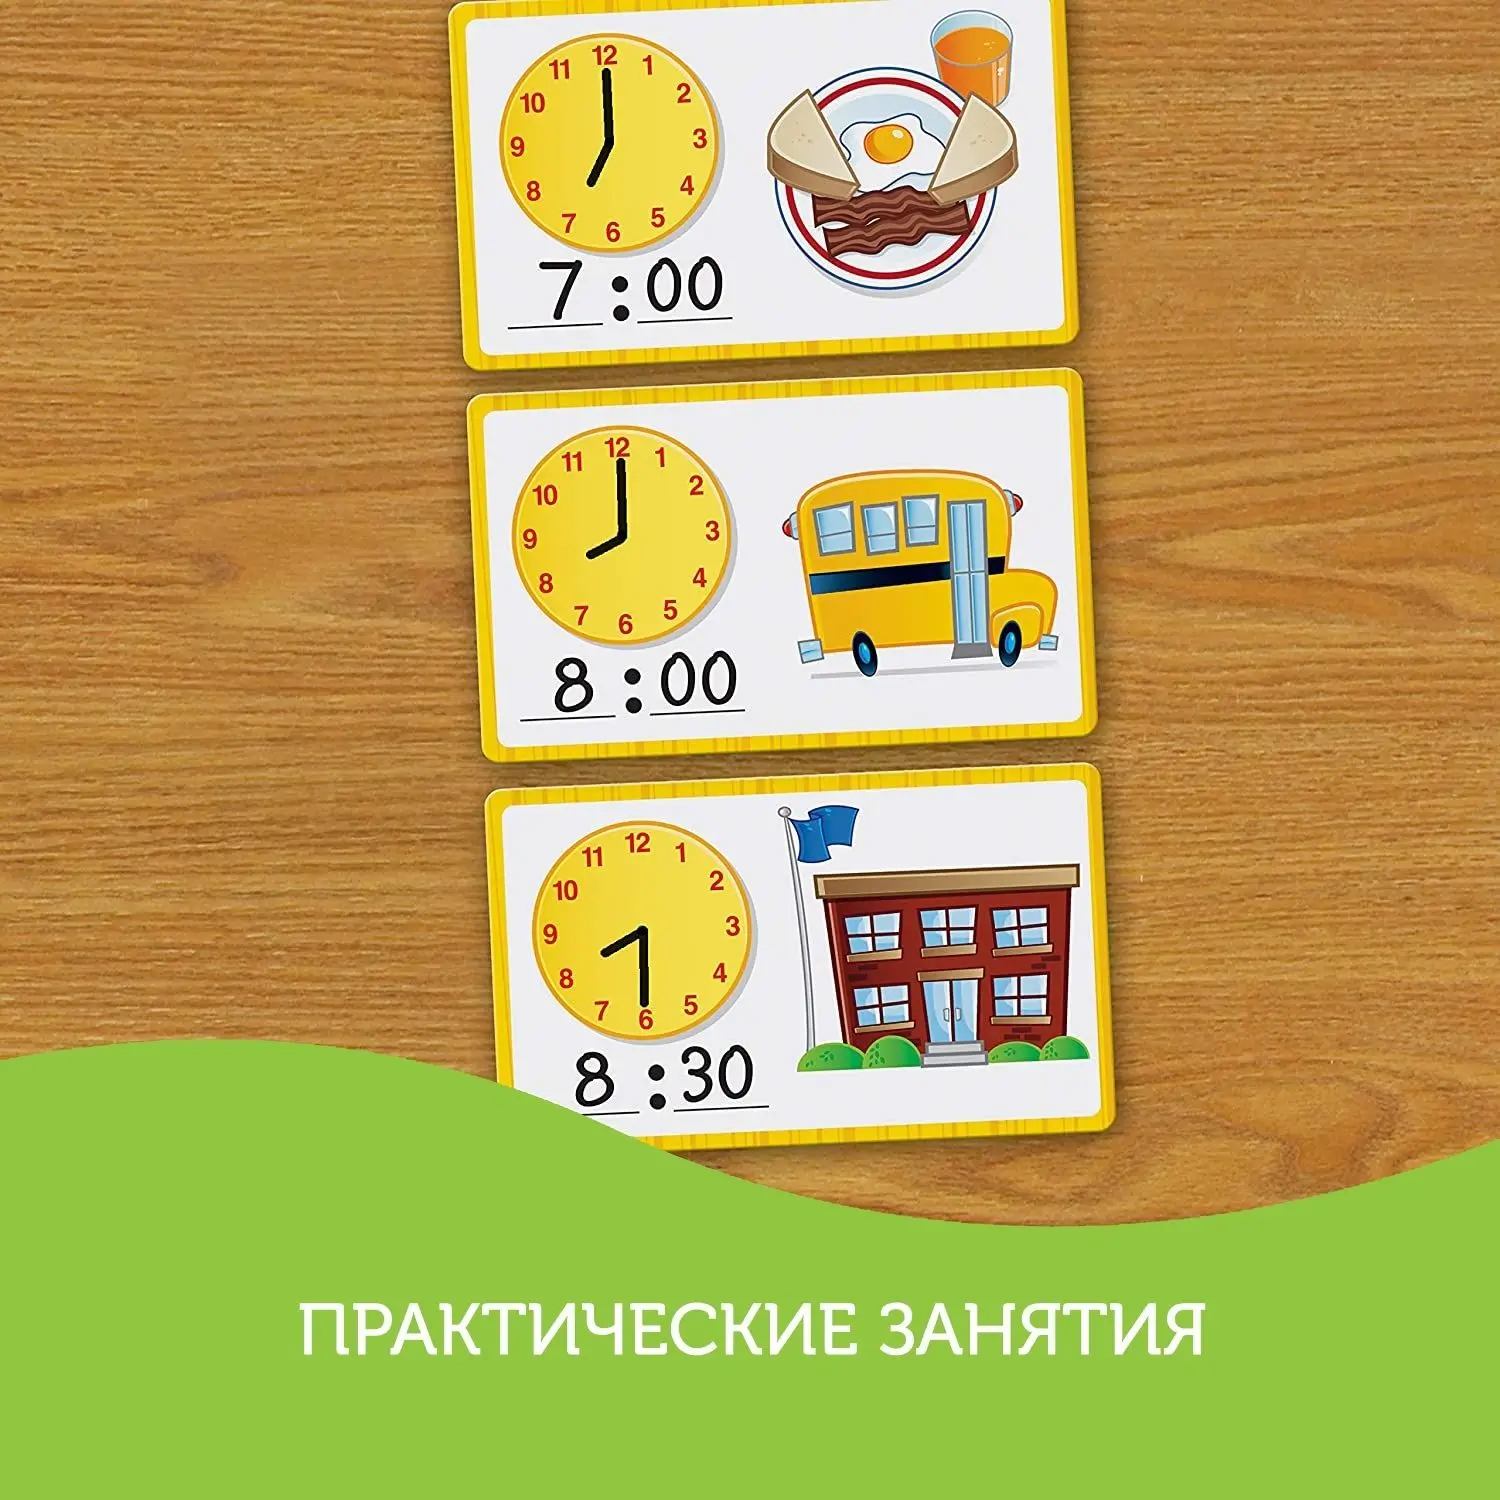 Ler3220 развивающая игрушка "Учимся определять время" (41 элемент). Time activities.